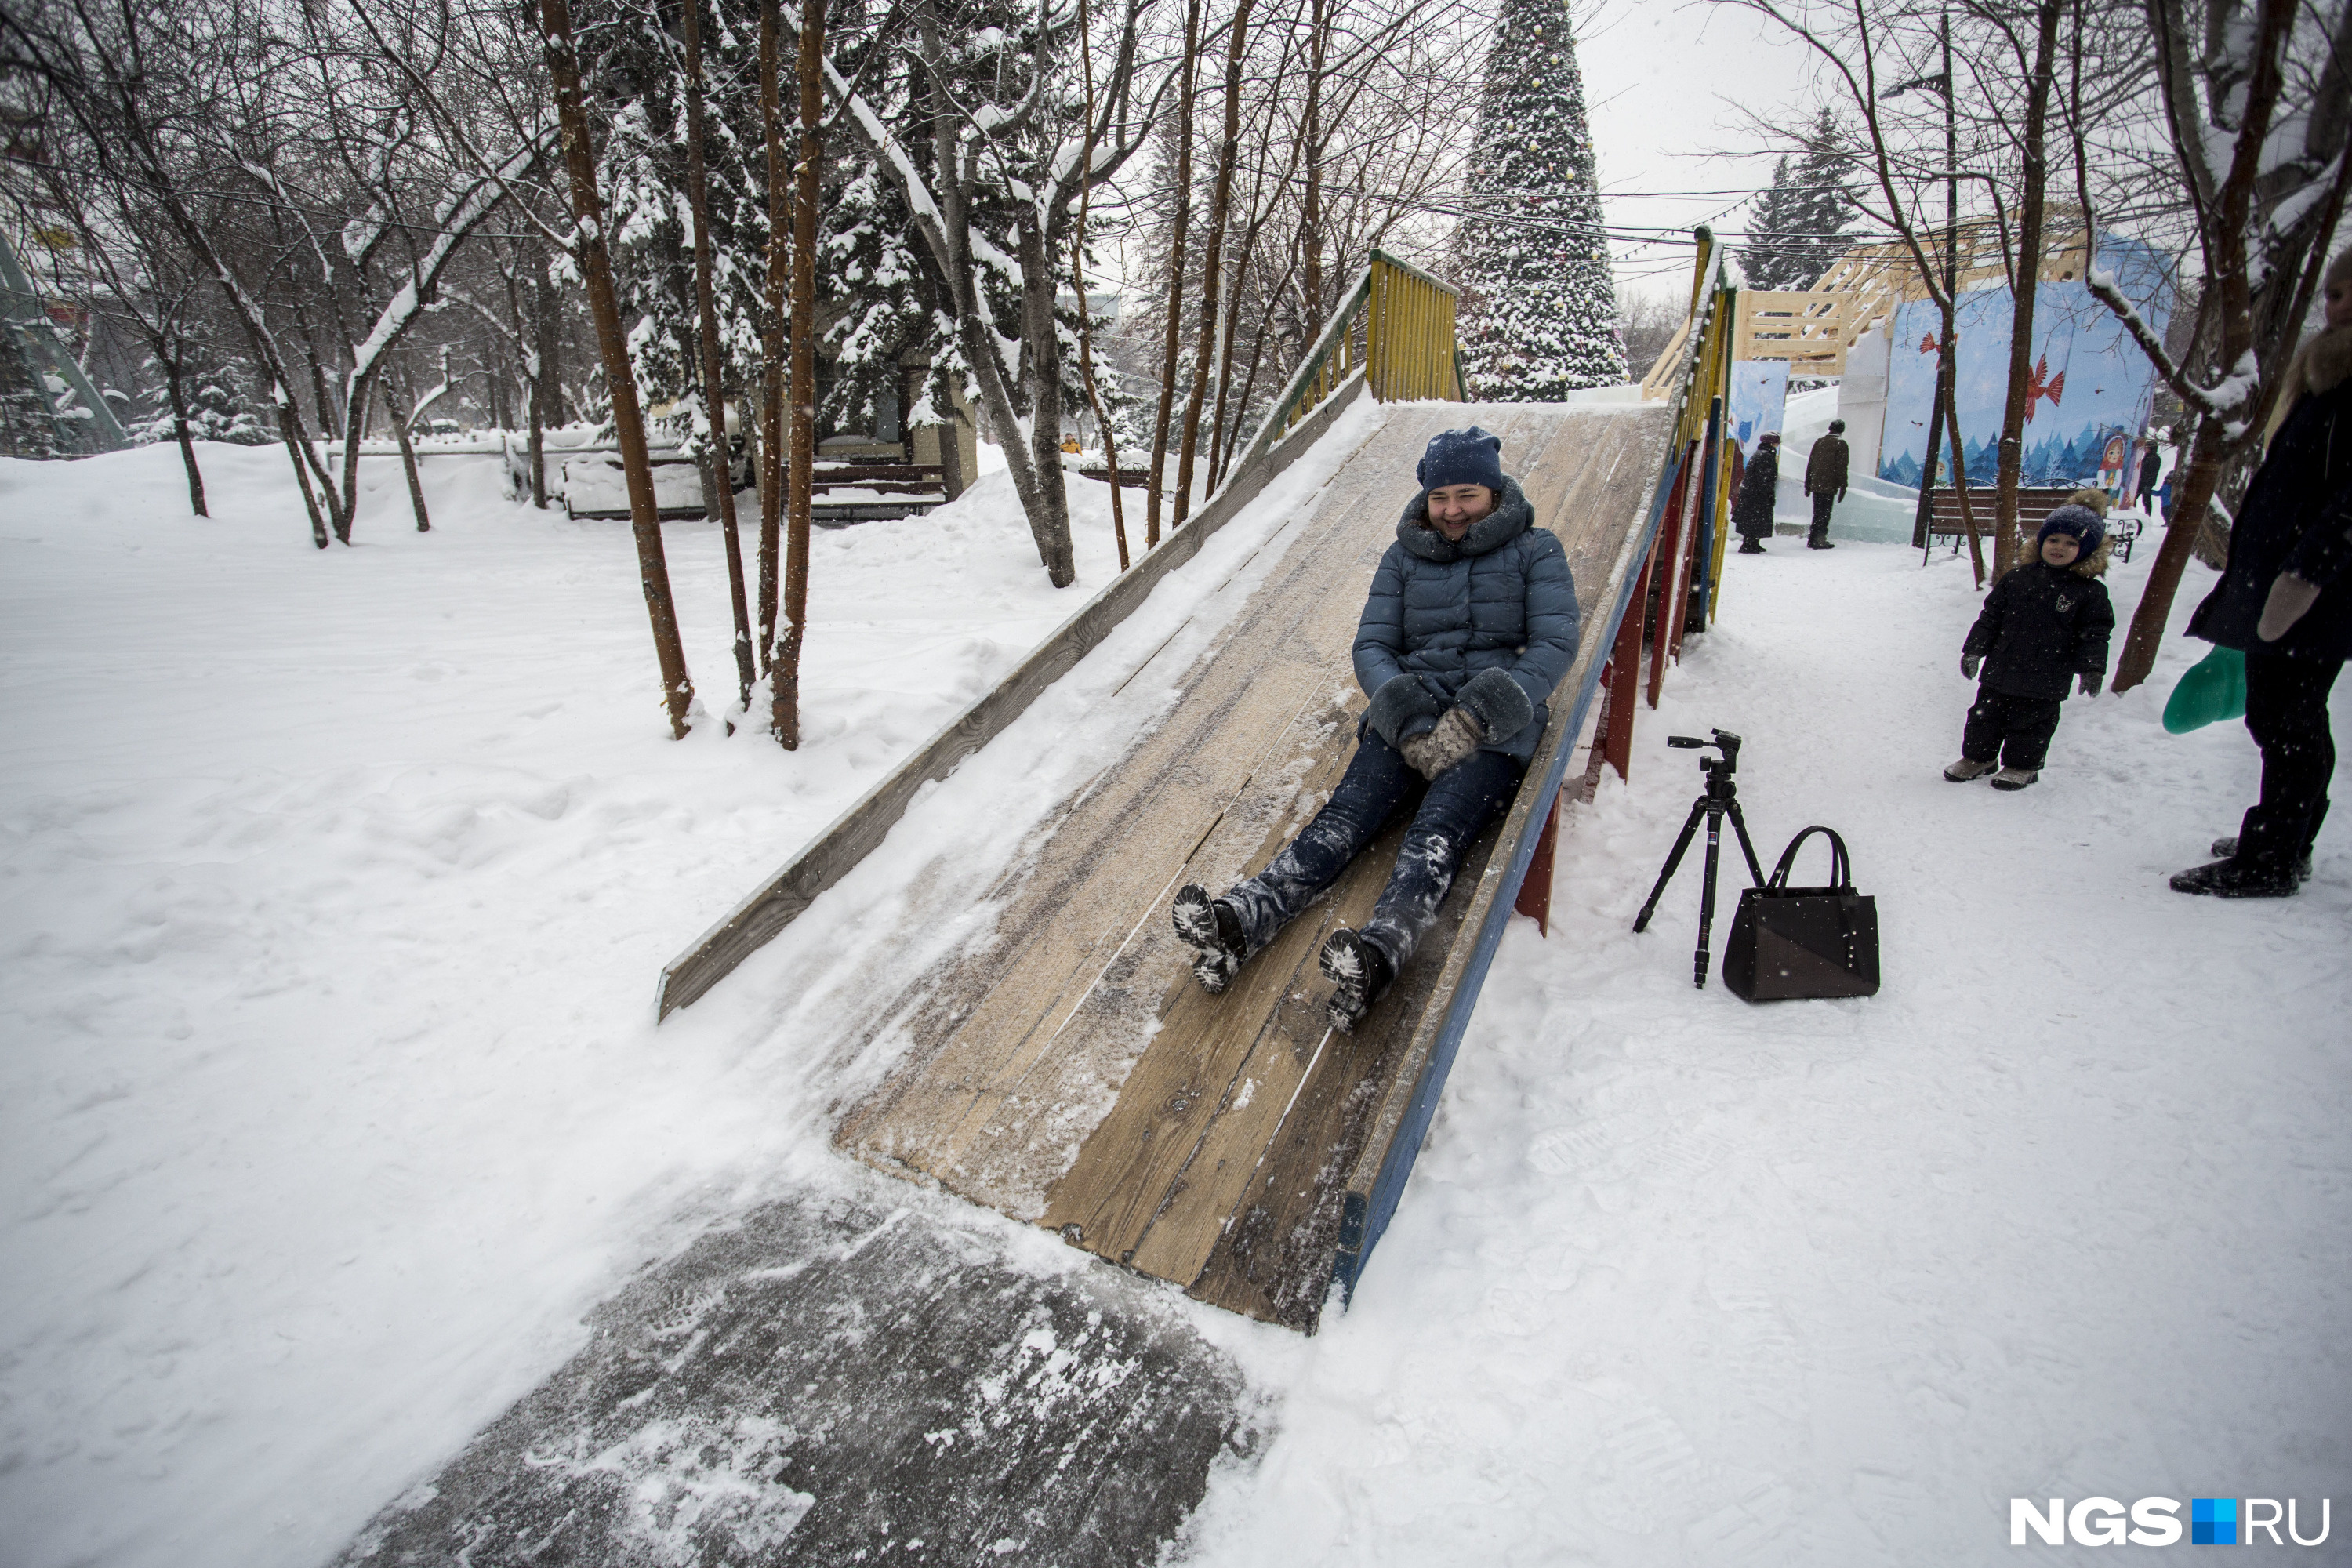 Бесплатно покататься можно на небольшой деревянной горке в парке Кирова. Причём достаточно весело